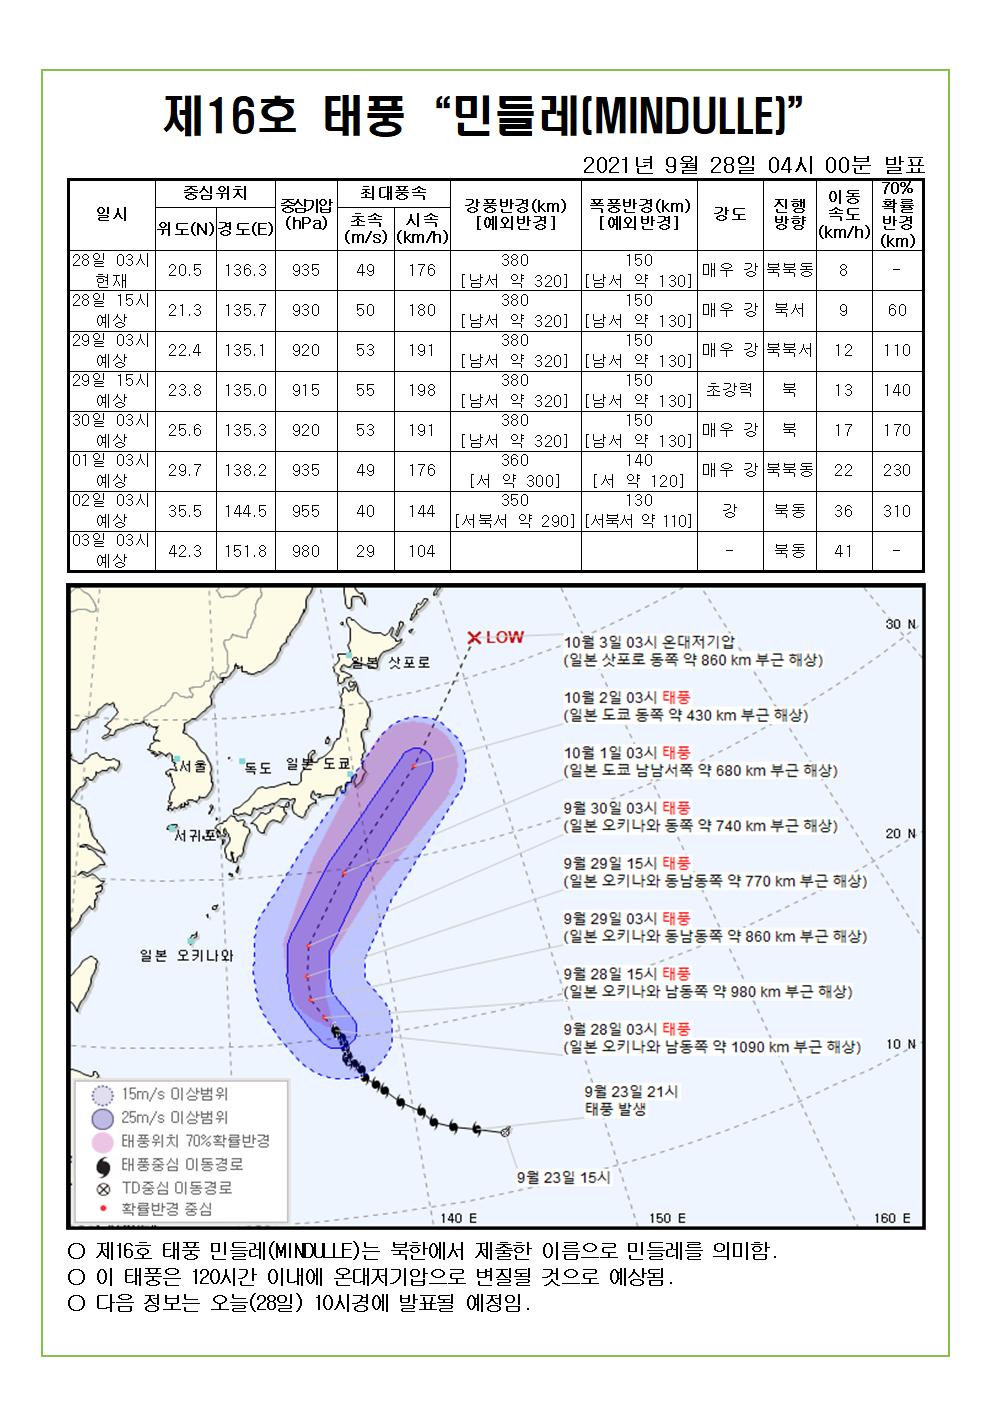 제16호 태풍 민들레 예상진로도 9월 28일(화) 04시00분 발표